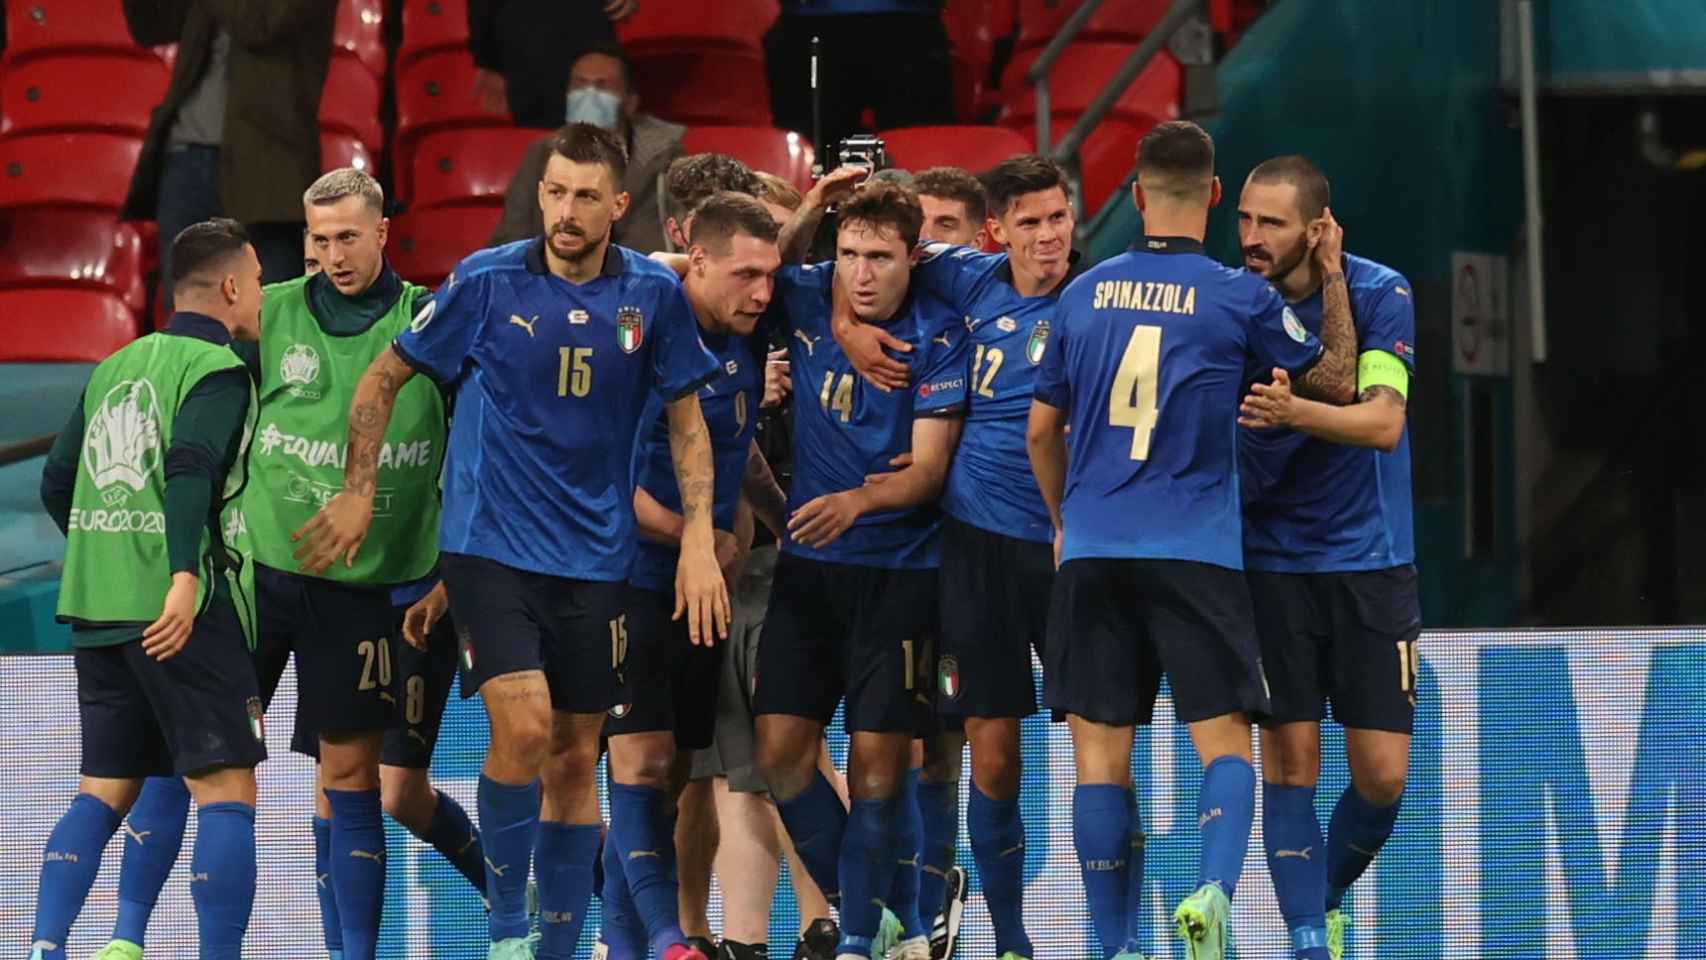 Piña de los jugadores de la selección de Italia para celebrar el gol de Chiesa en octavos de la Eurocopa 2020